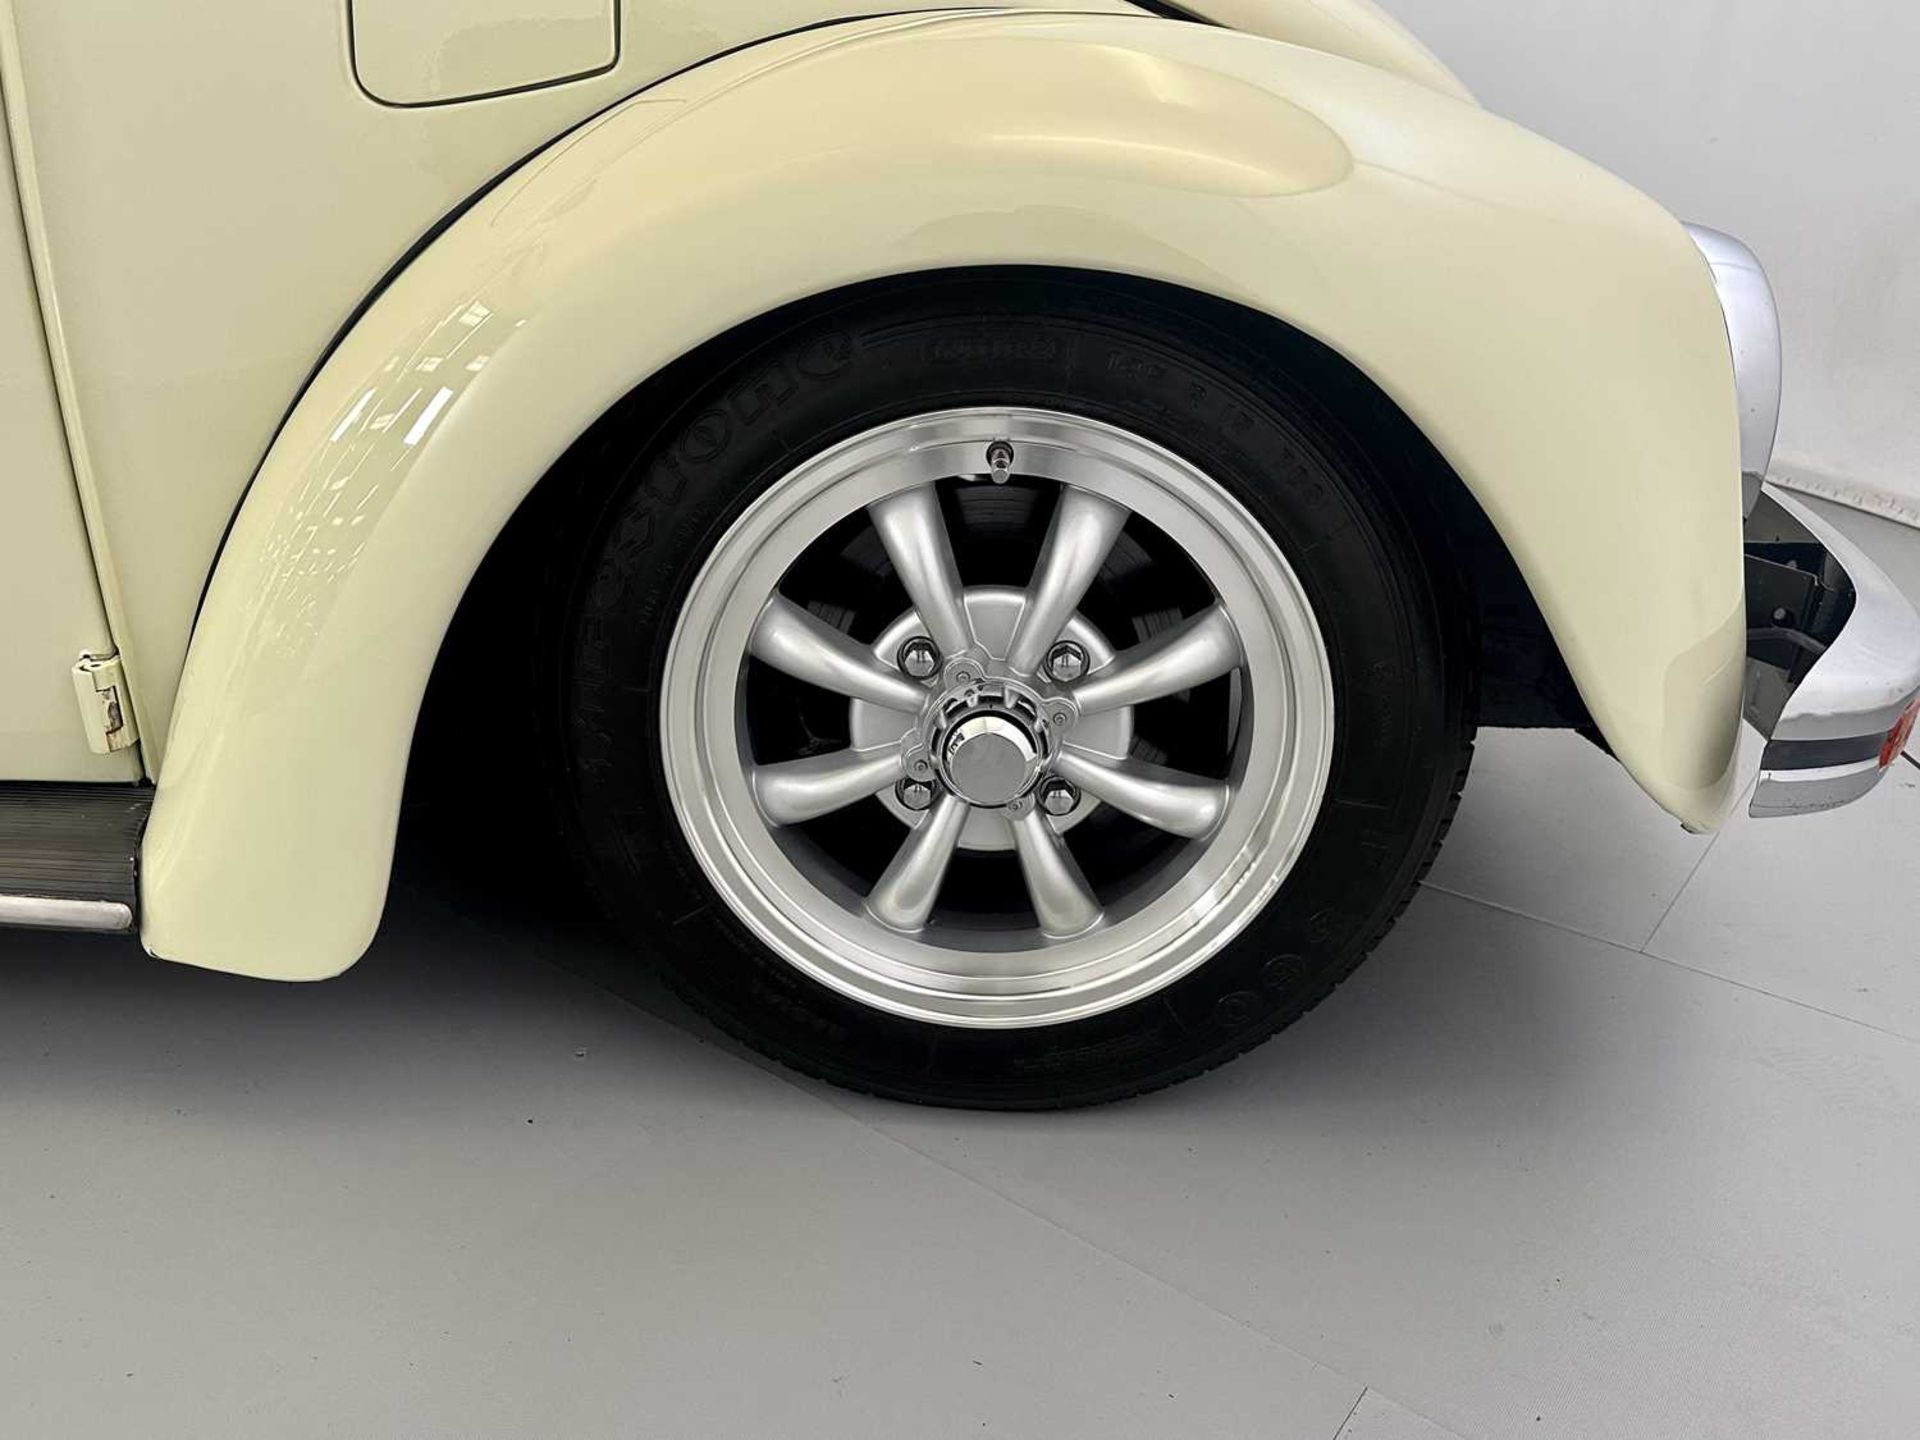 1971 Volkswagen Beetle - Image 16 of 30